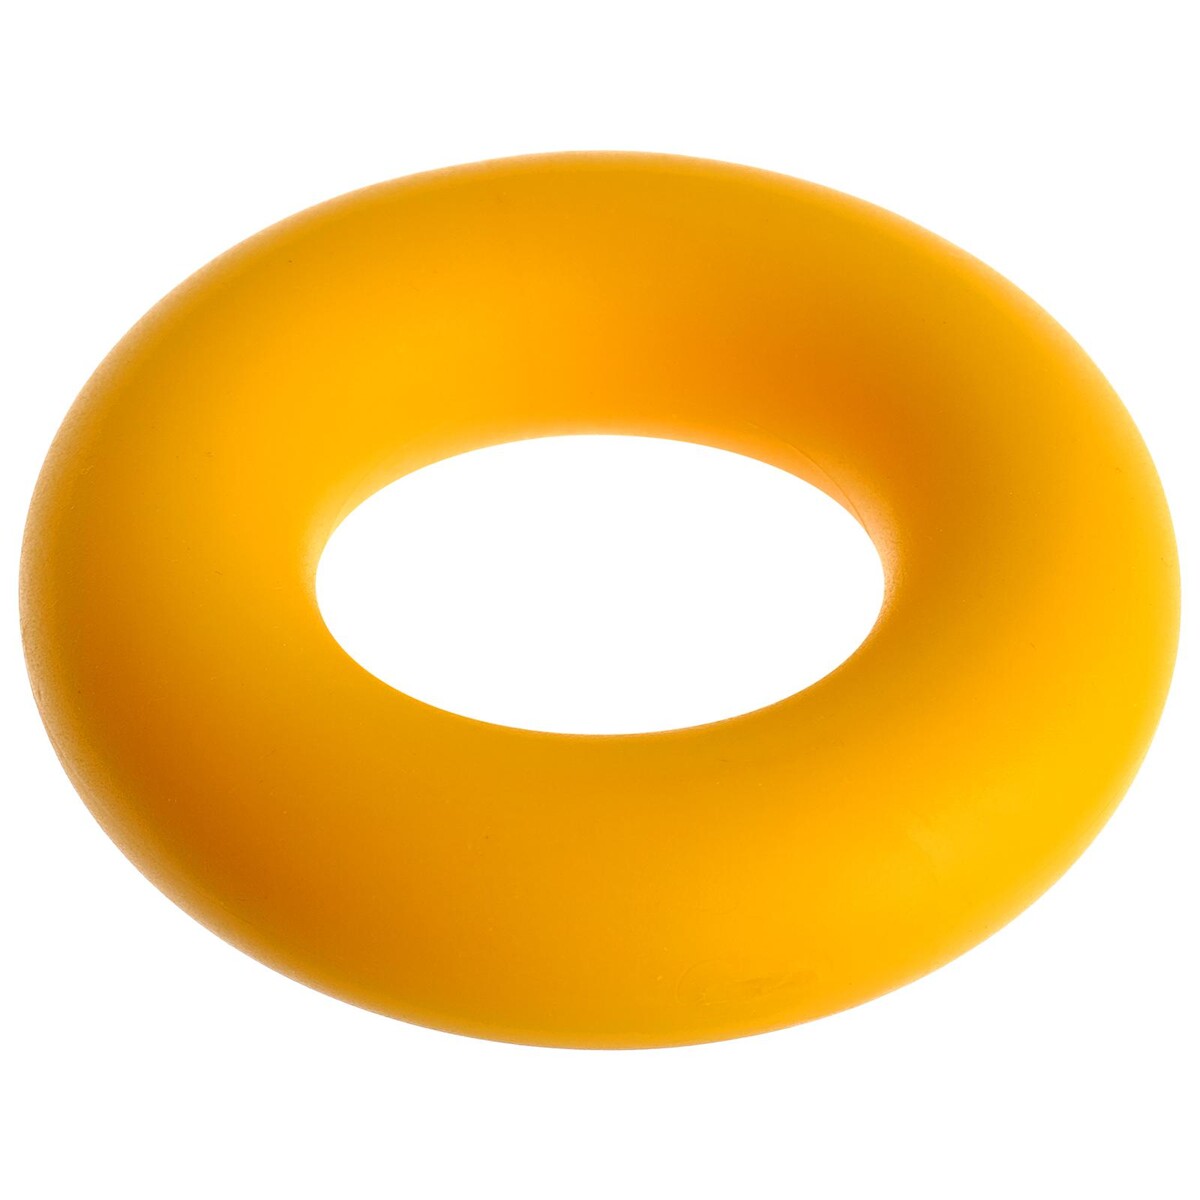 Эспандер кистевой fortius, 40 кг, цвет желтый fortius набор кистевых эспандеров 3 шт h180701 102030setт